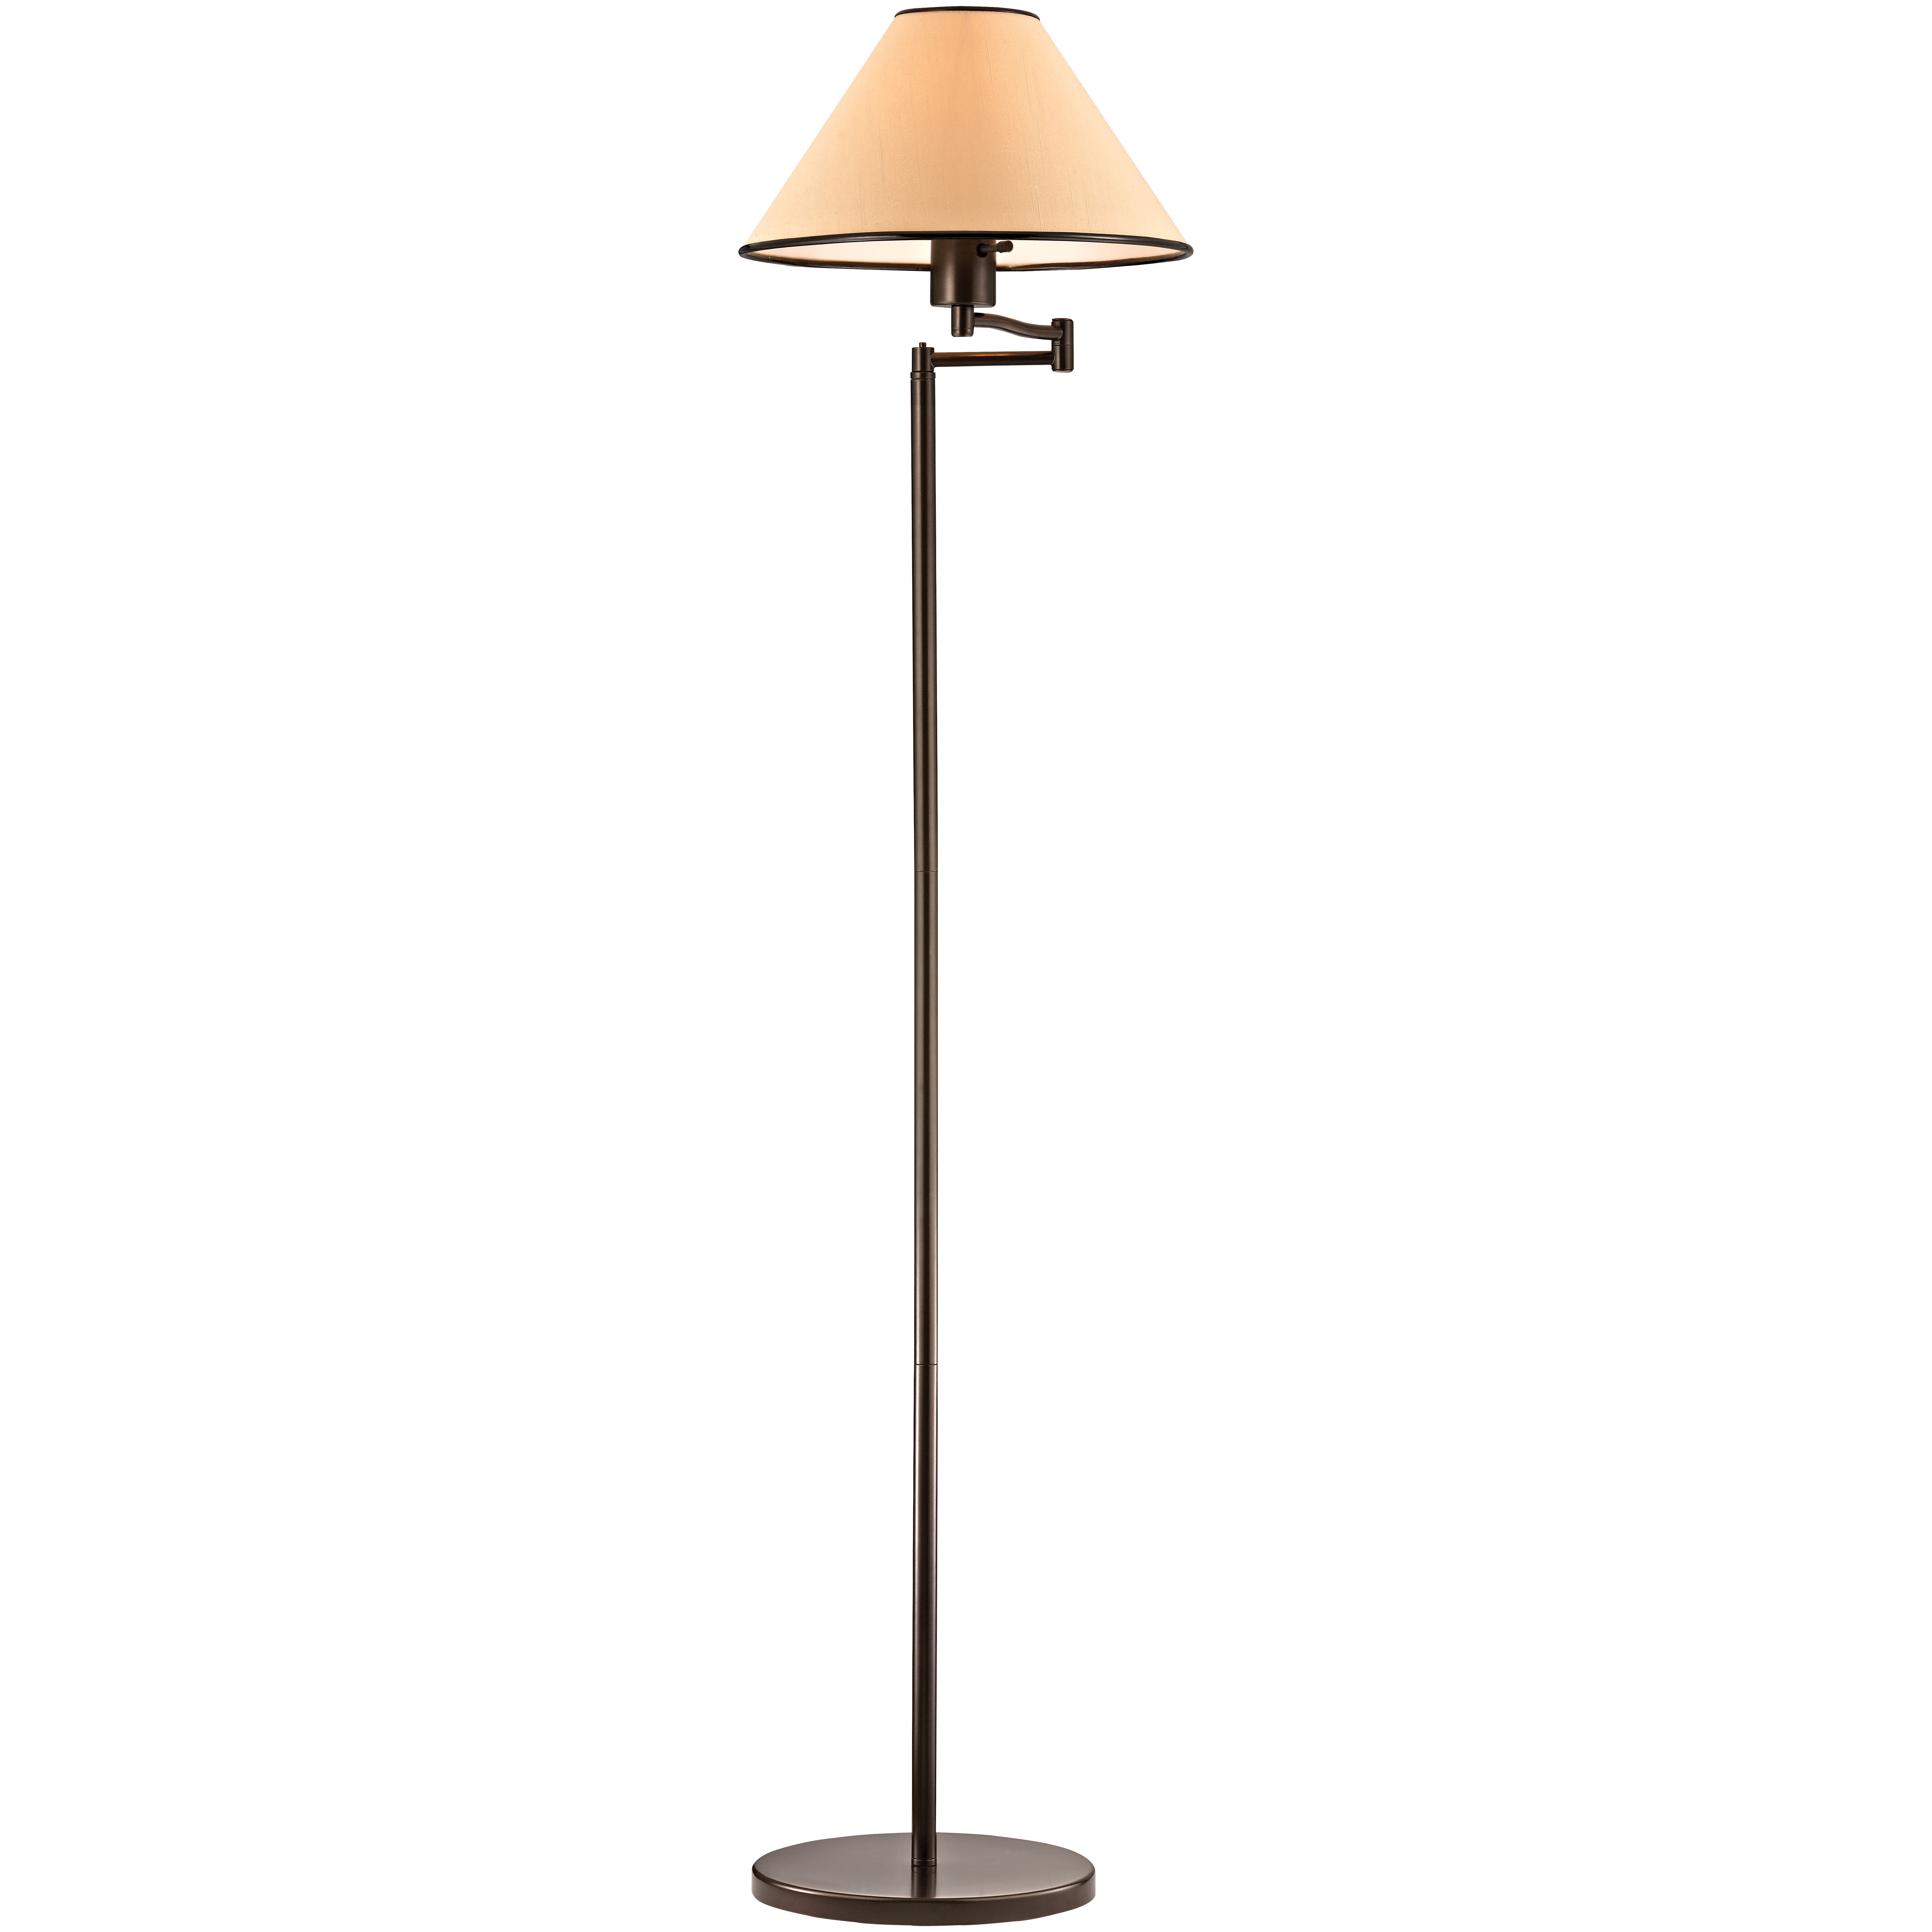 Boston Harbor AF-8008-VB Floor Lamp, Incandescent Lamp - 1